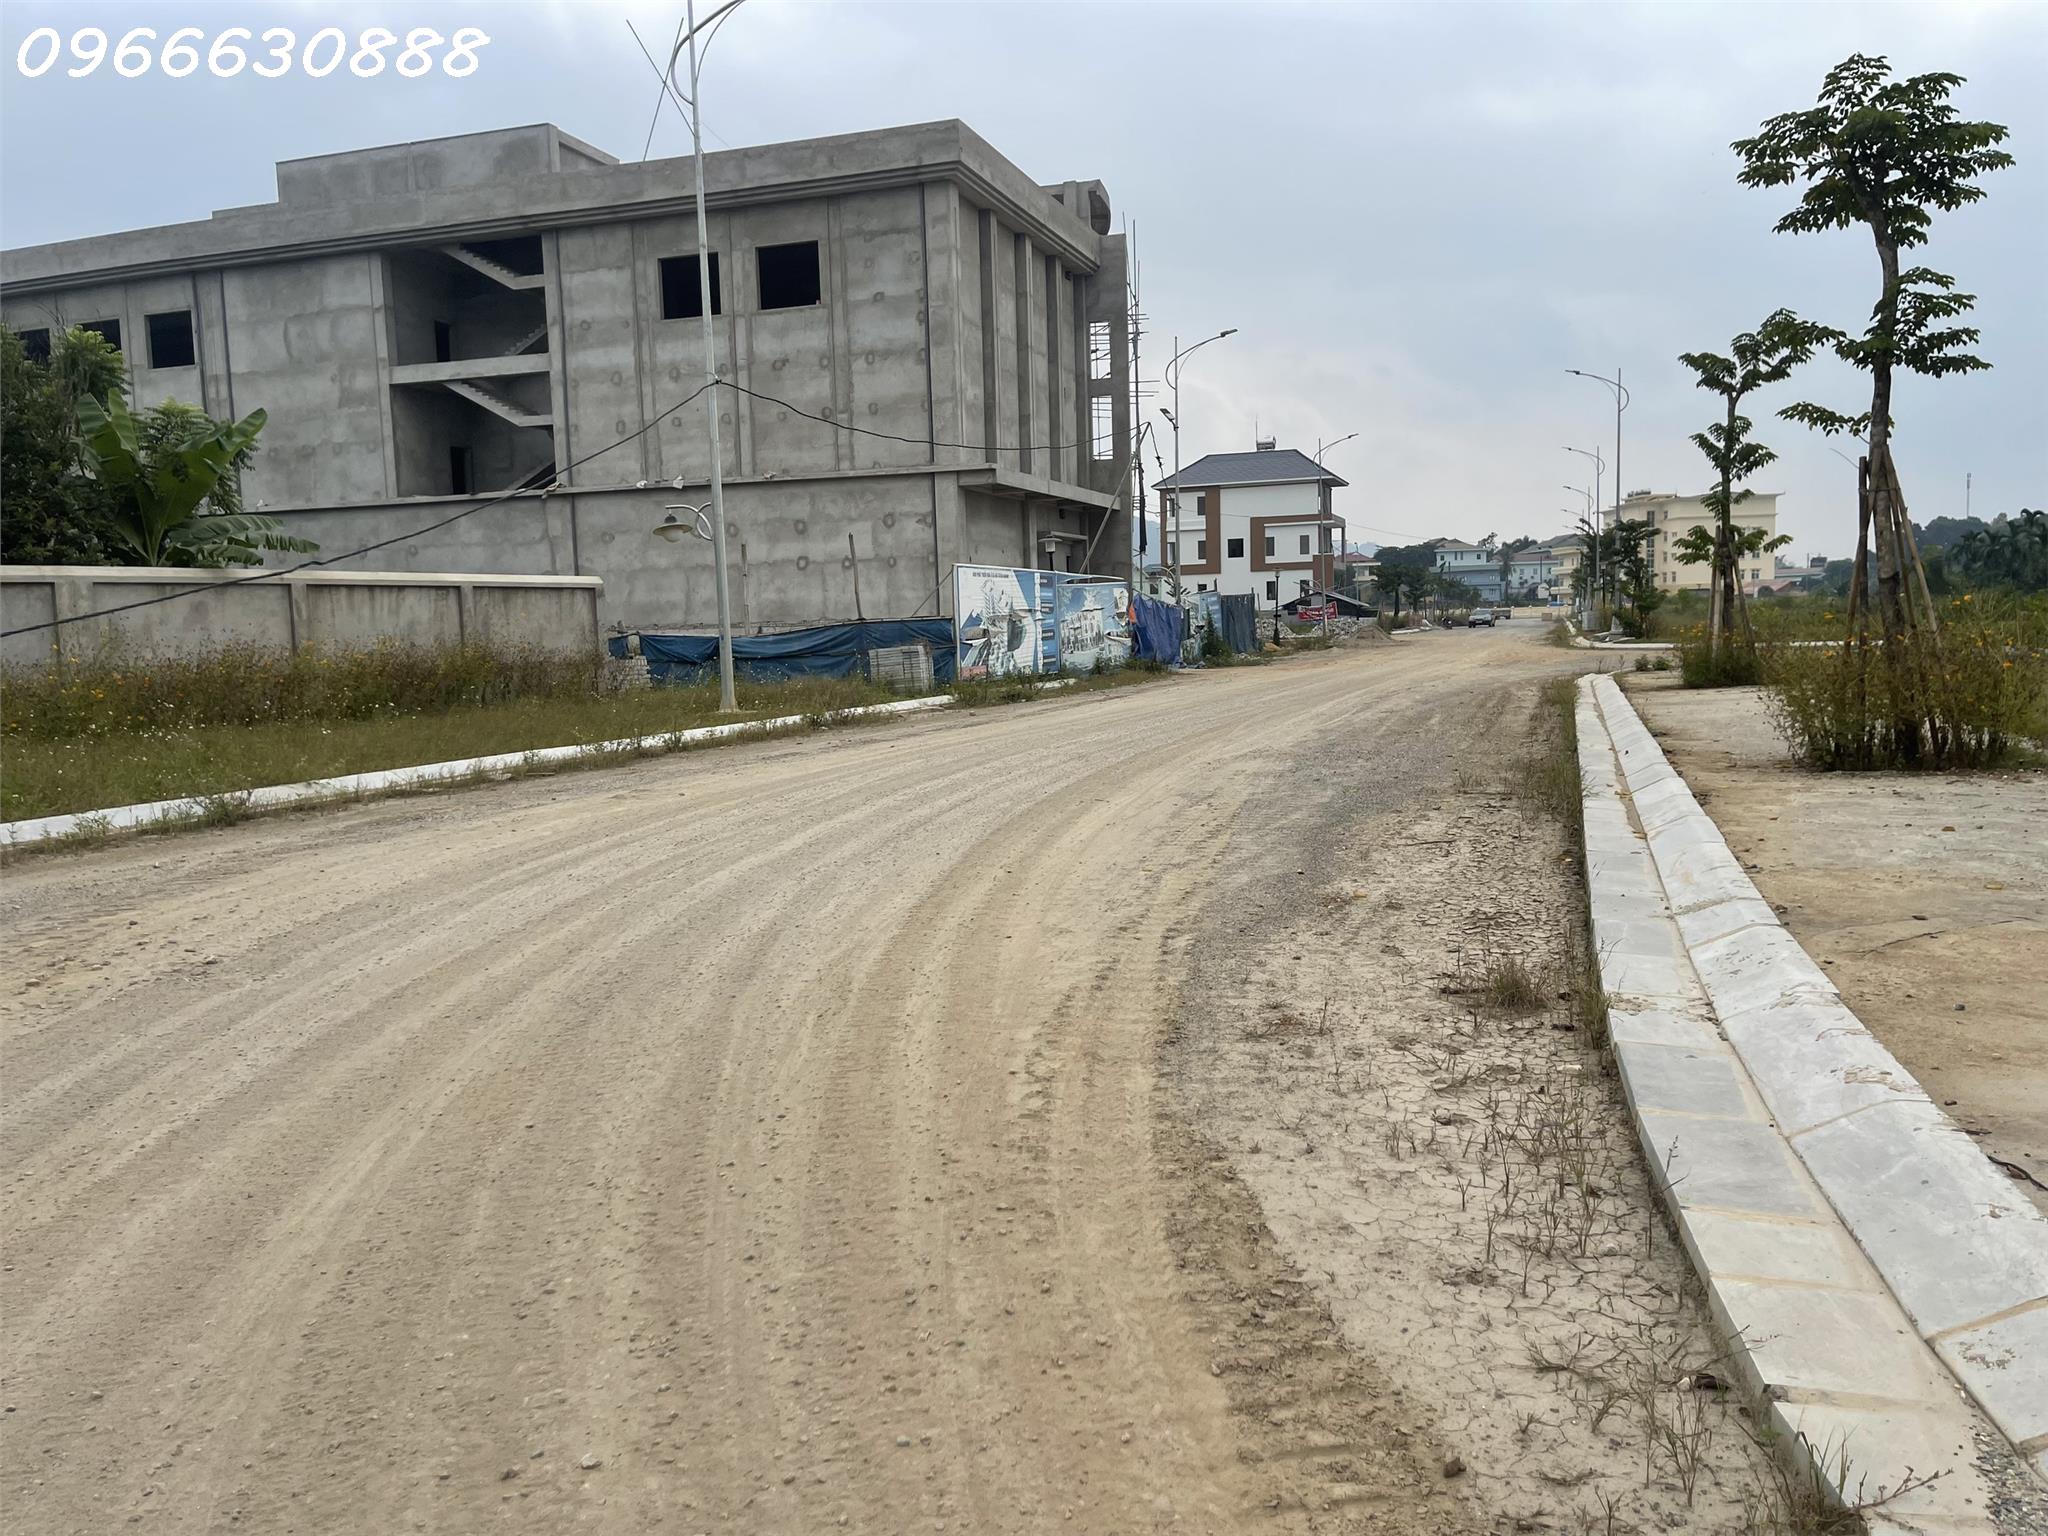 Gia đình cần tiền bán gấp ô đất phân lô tại khu đô thị Tân Hà TP Tuyên Quang vị trí cách trung tâm